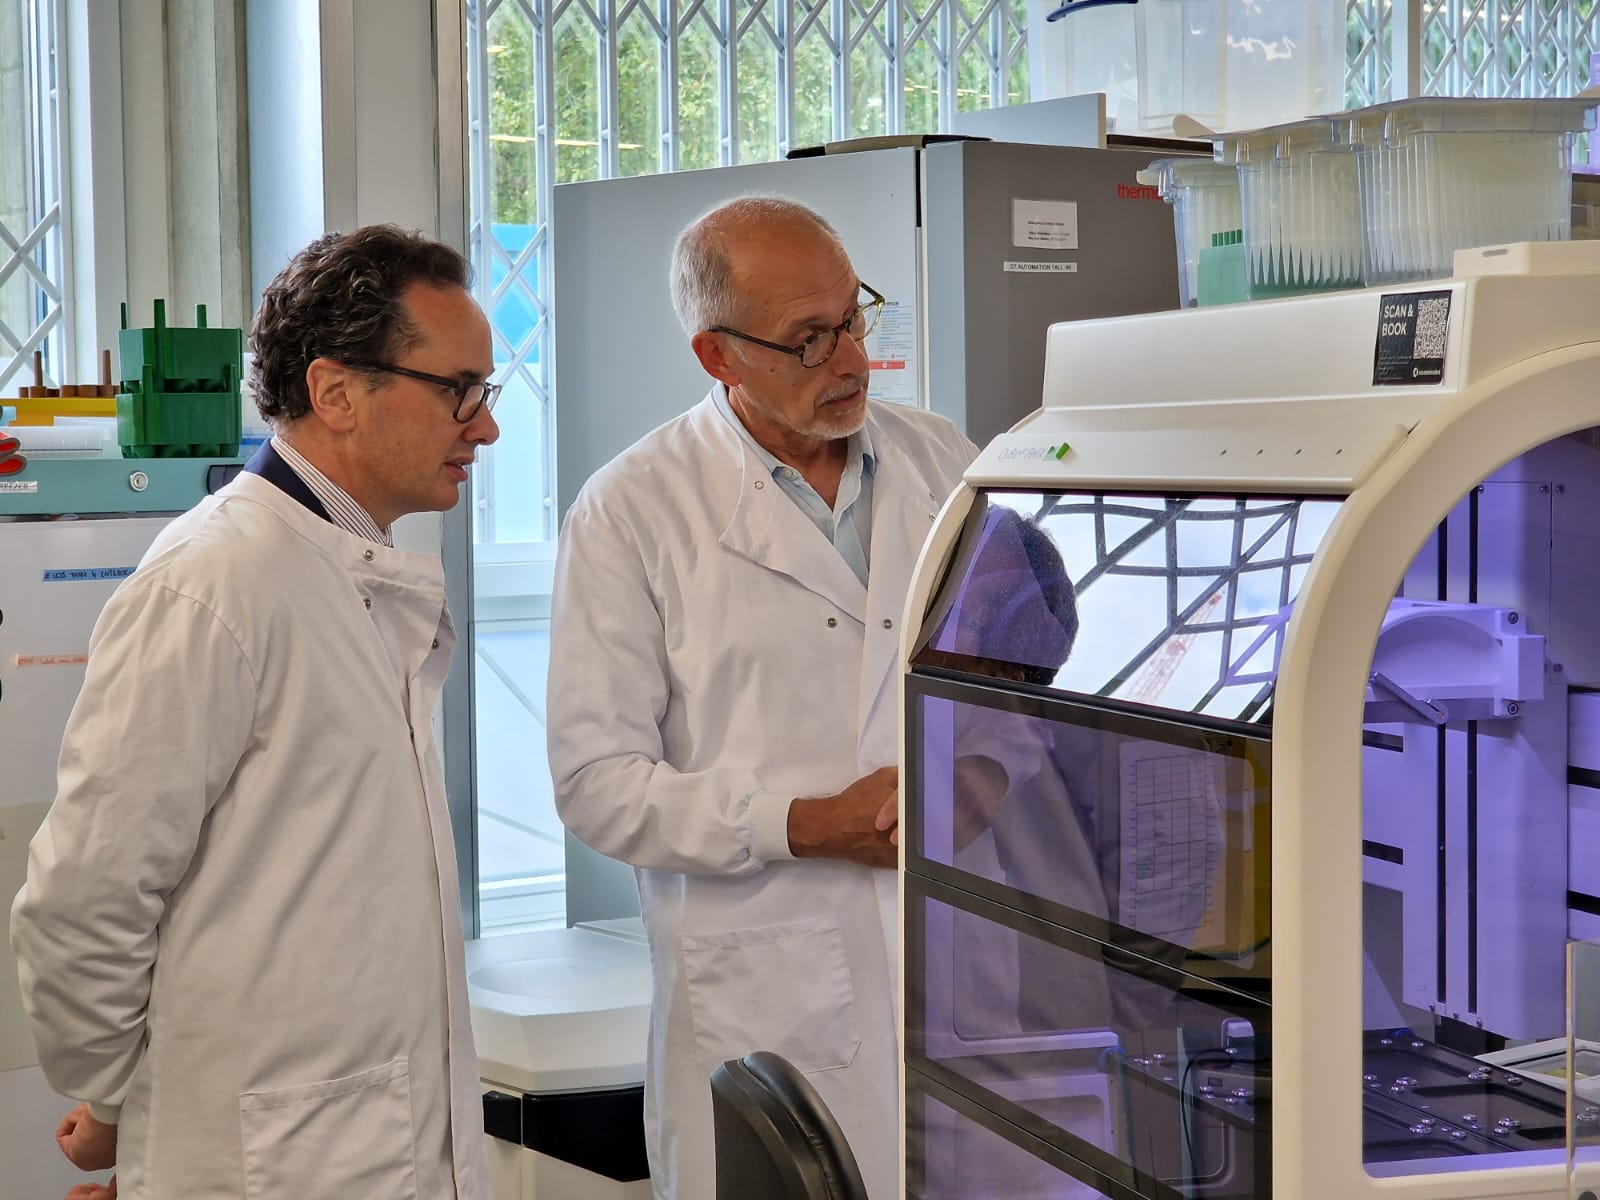 Các nhà nghiên cứu sử dụng máy CyBio FeliX để trích xuất và điều chỉnh các mẫu DNA. Ảnh: LabGenius